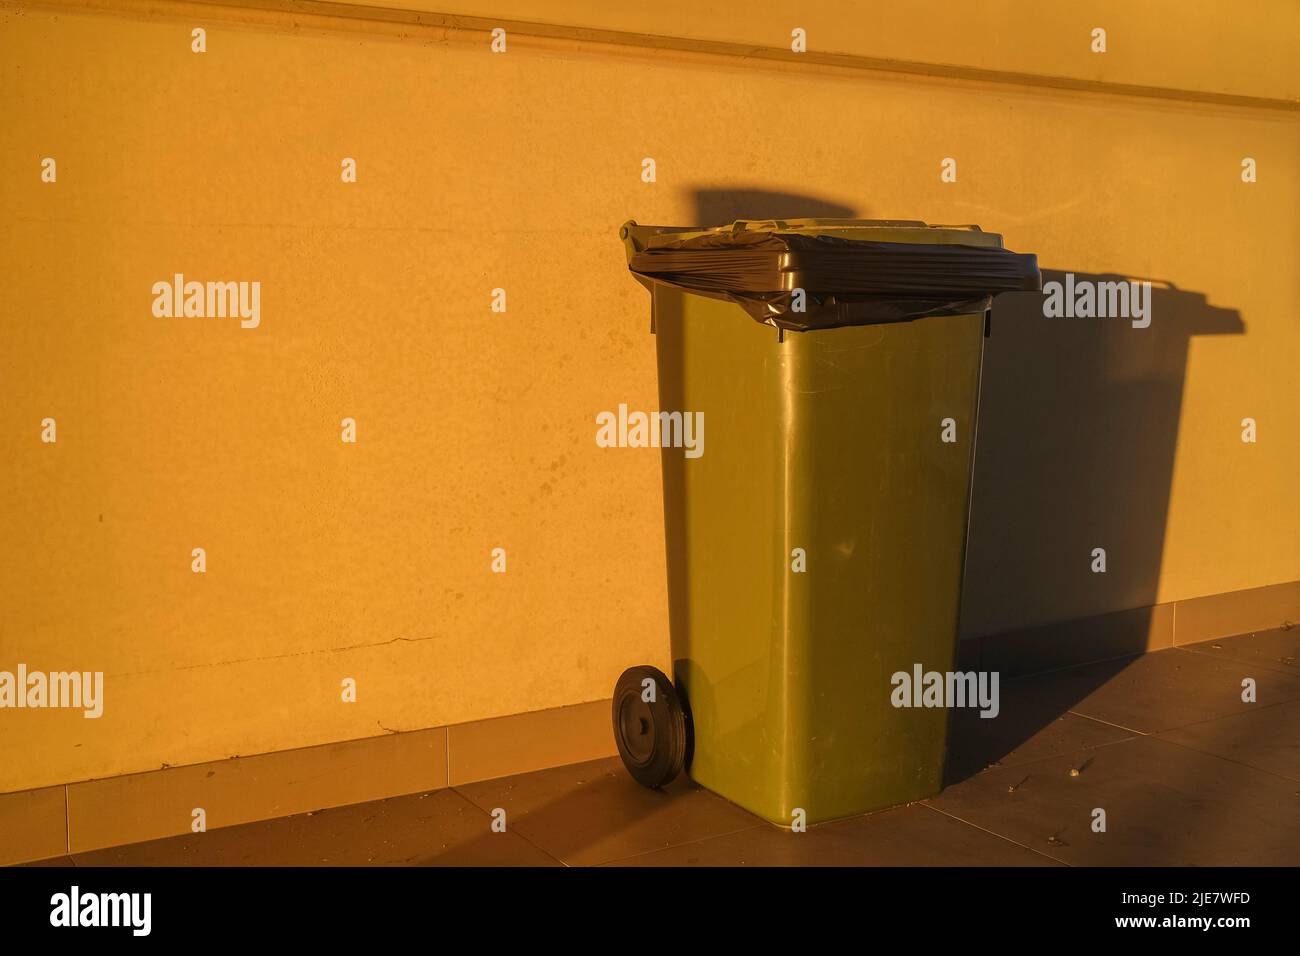 Wheelie waste bin against wall in morning light Stock Photo